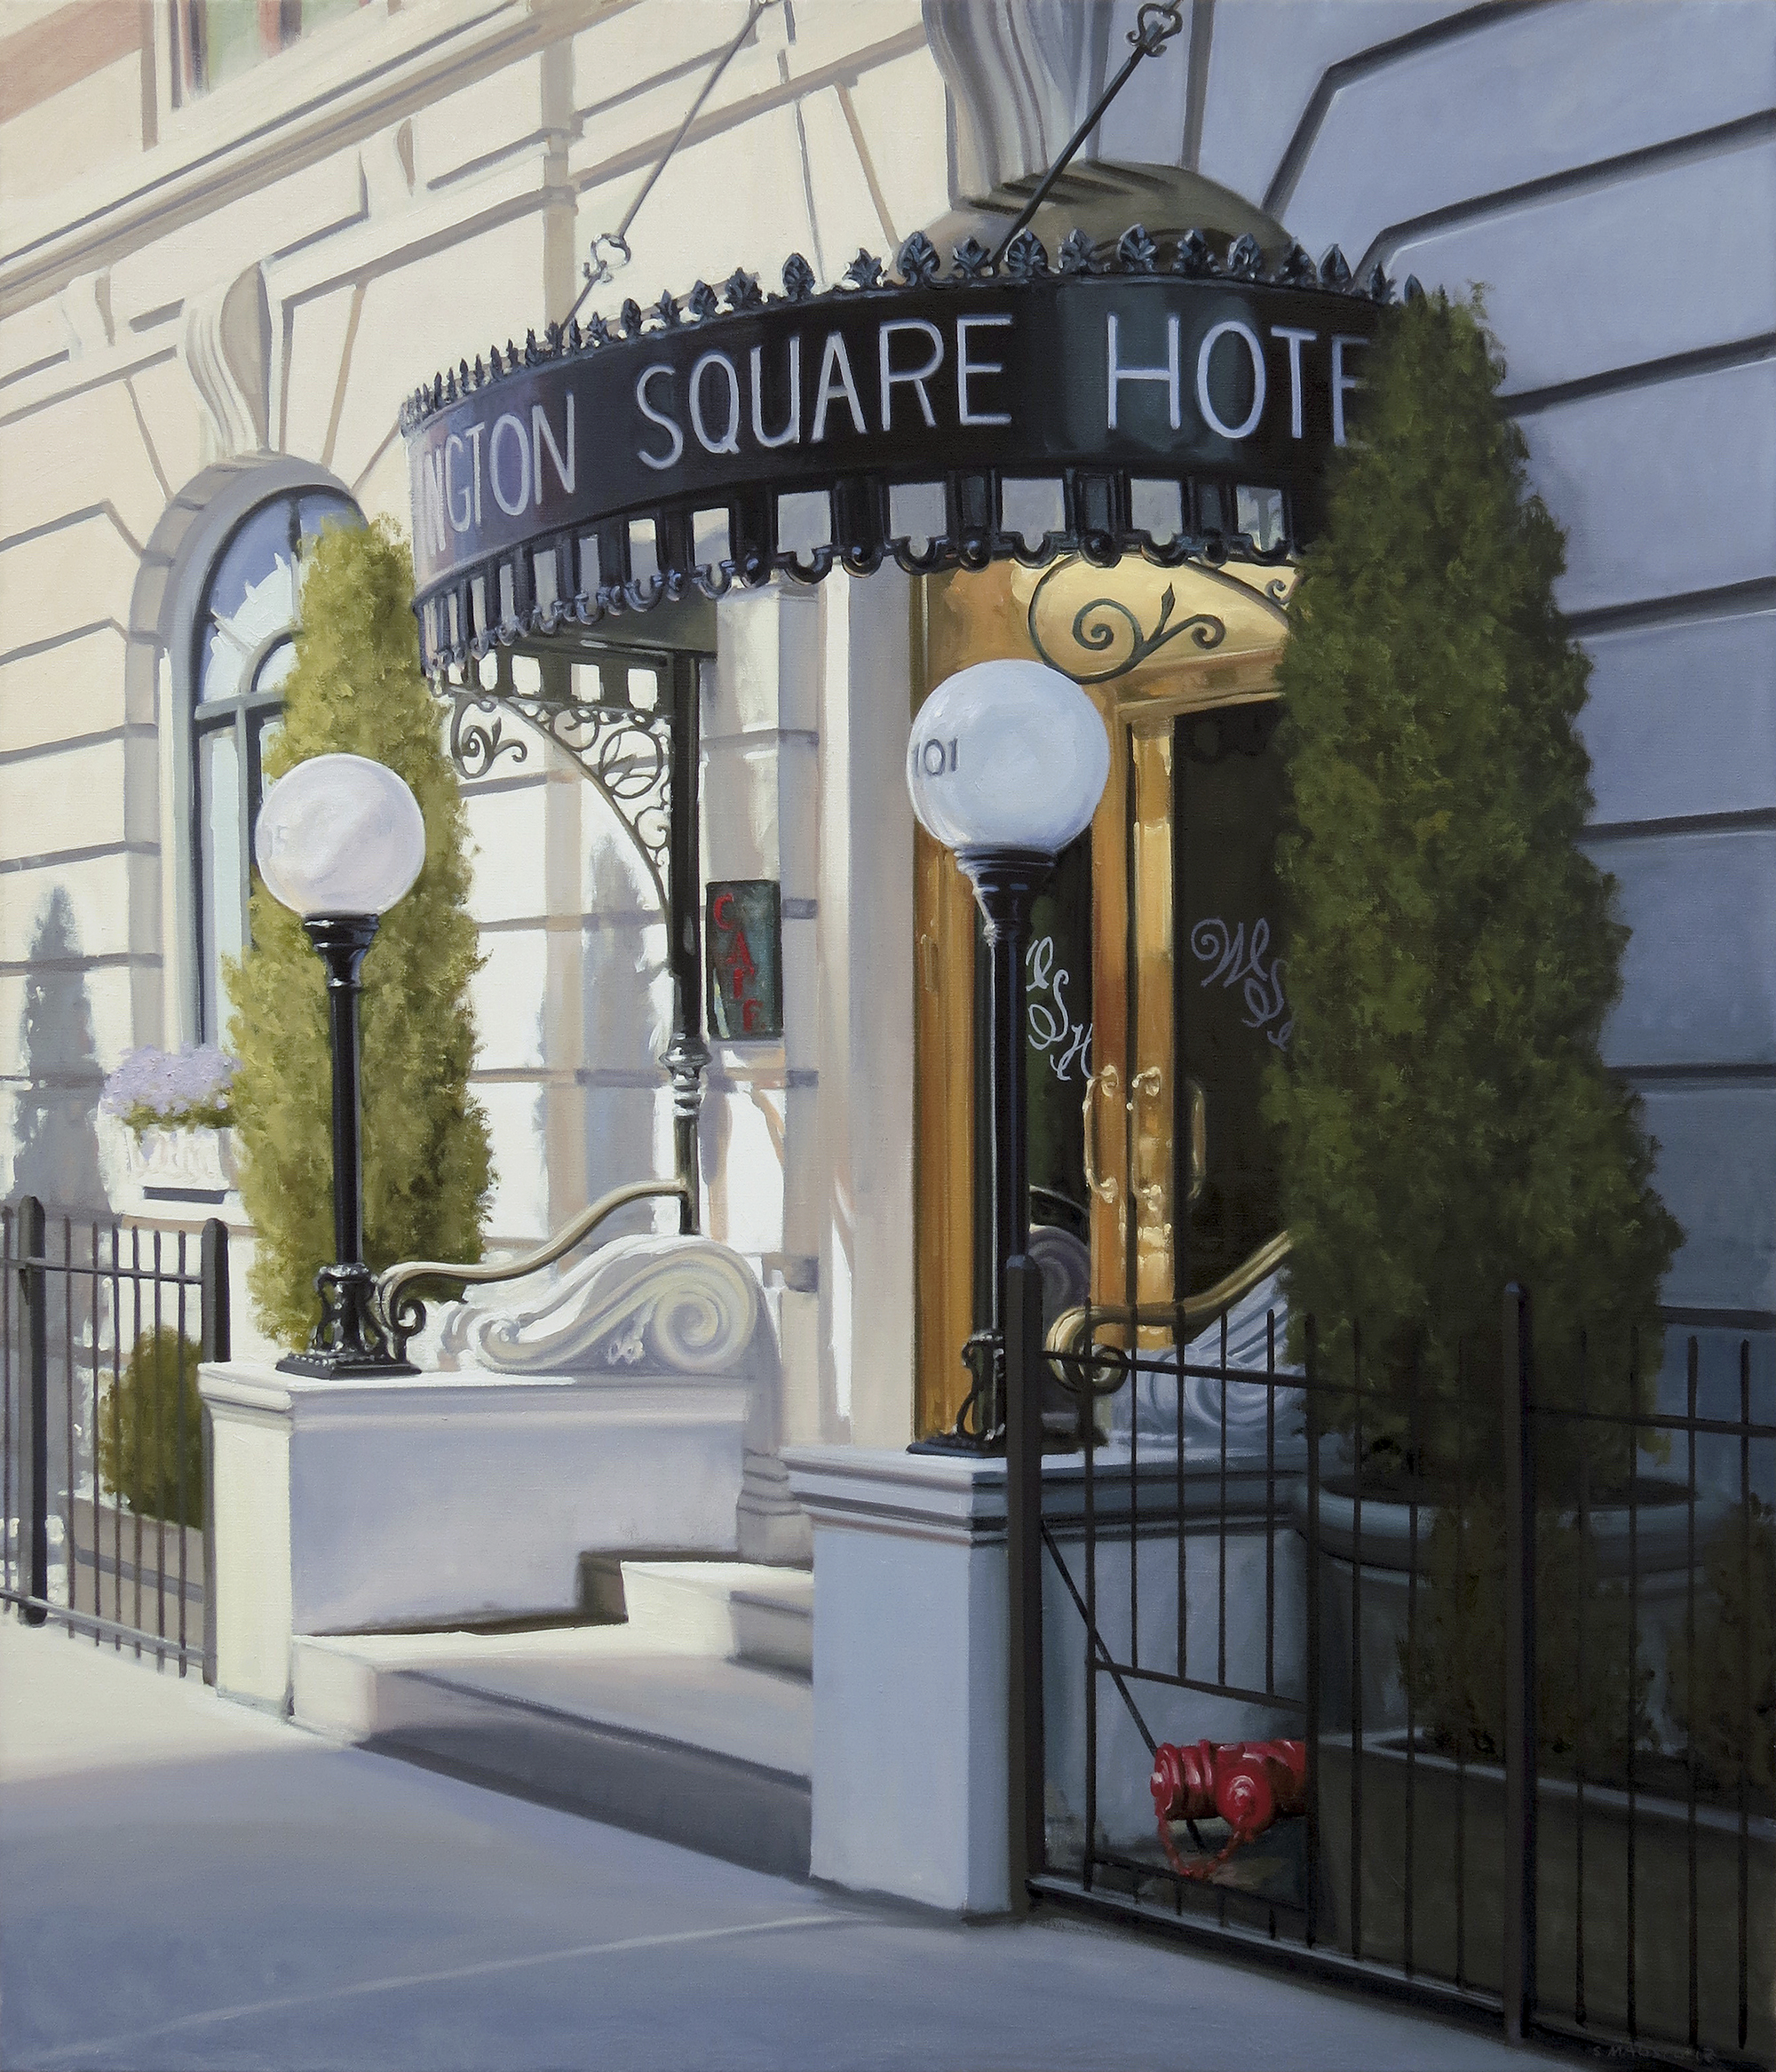 Stephen Magsig "Washington Square Hotel" 42 x 36